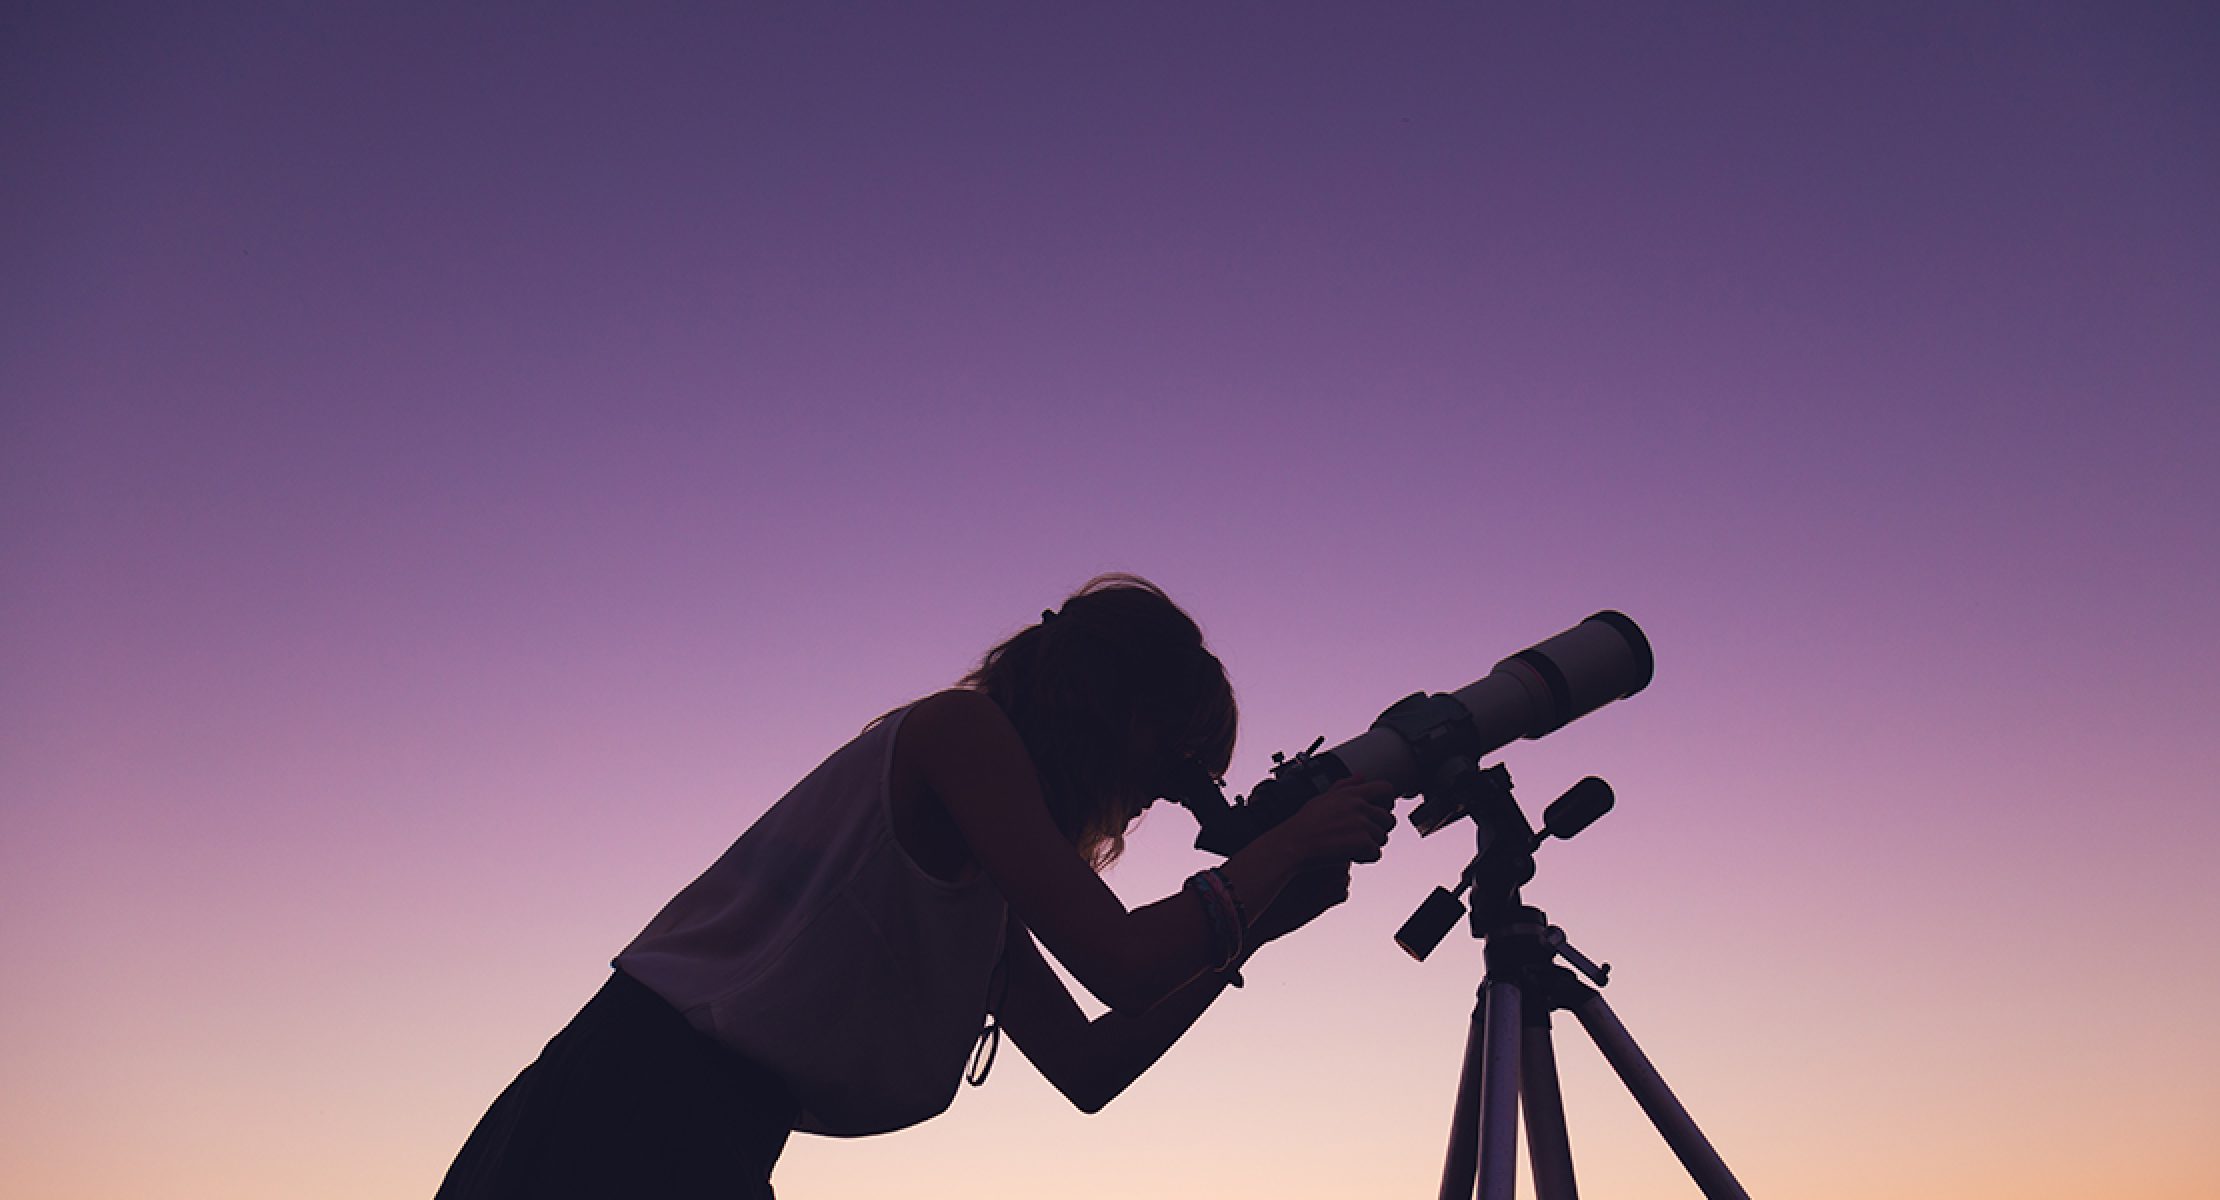 lehigh valley amateur astronomy society